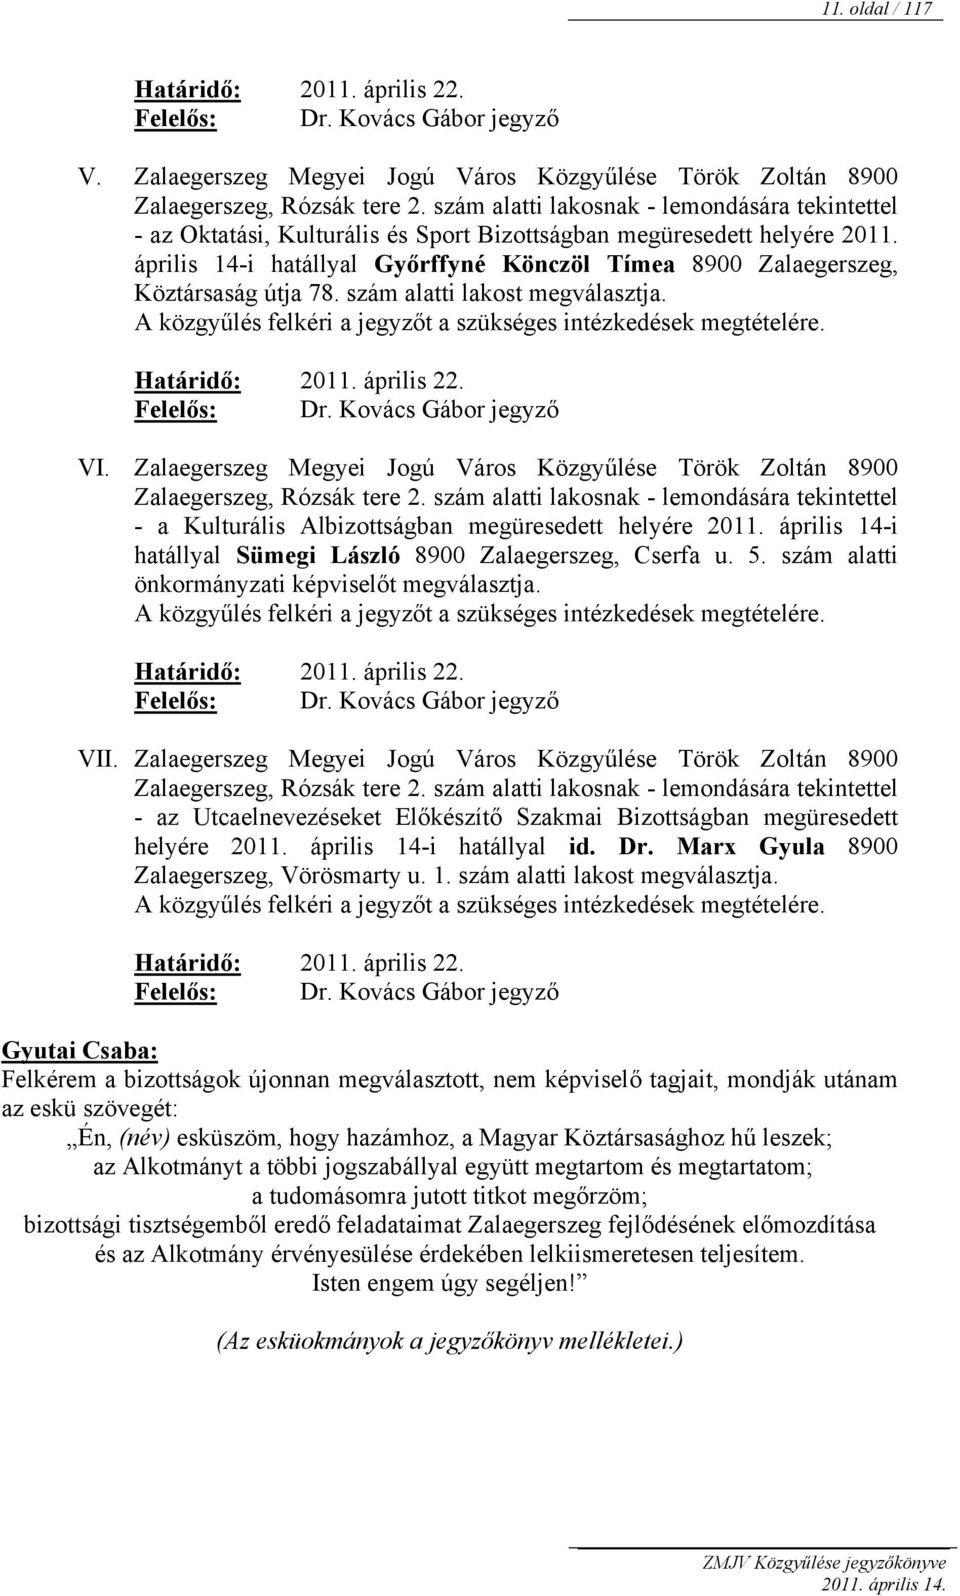 április 14-i hatállyal Győrffyné Könczöl Tímea 8900 Zalaegerszeg, Köztársaság útja 78. szám alatti lakost megválasztja. A közgyűlés felkéri a jegyzőt a szükséges intézkedések megtételére.